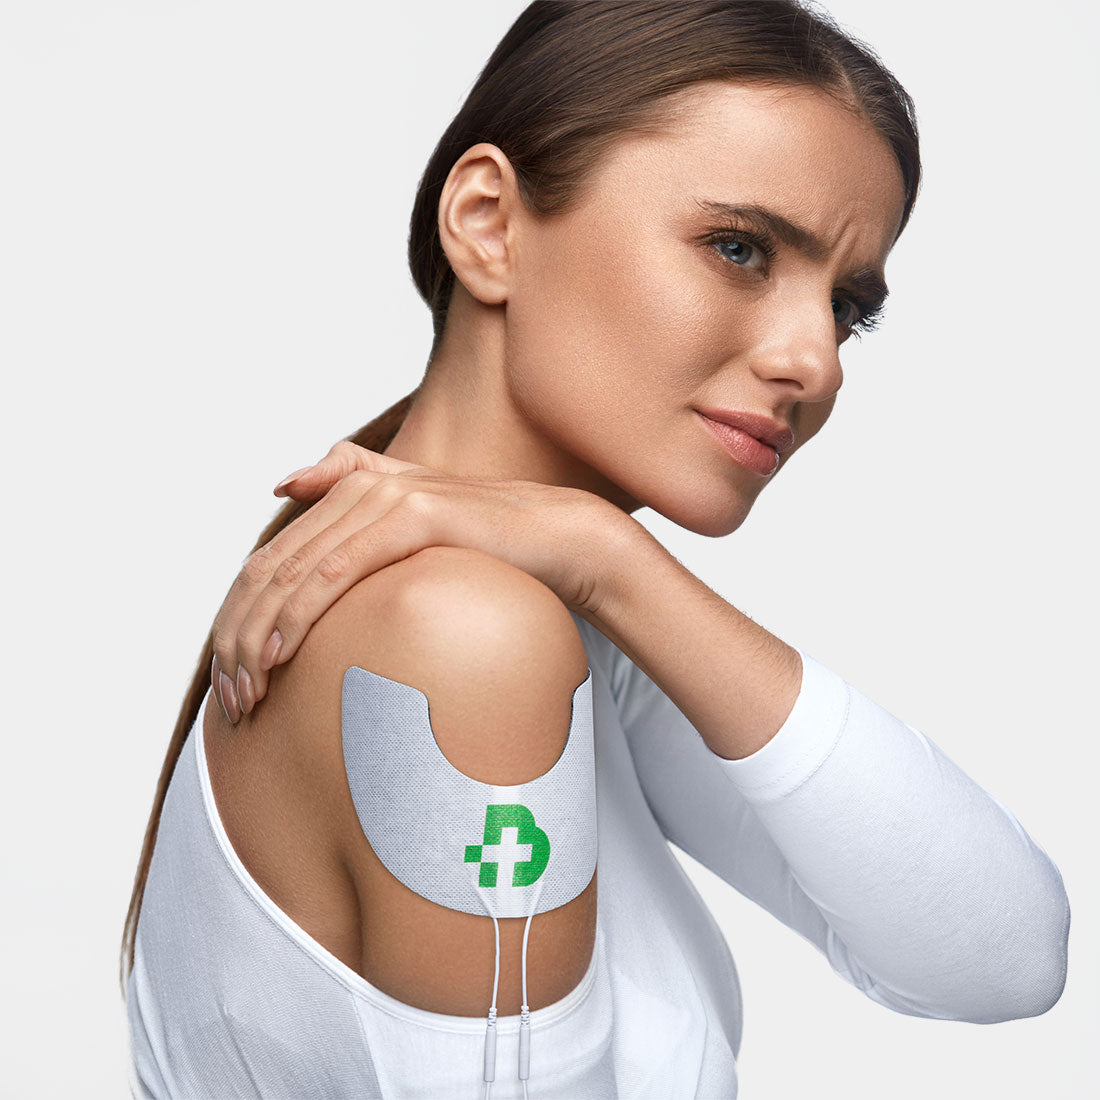 TESMED Shoulder 2 Hochwertige Elektroden für die Schulterbehandlung, kein Gel erforderlich